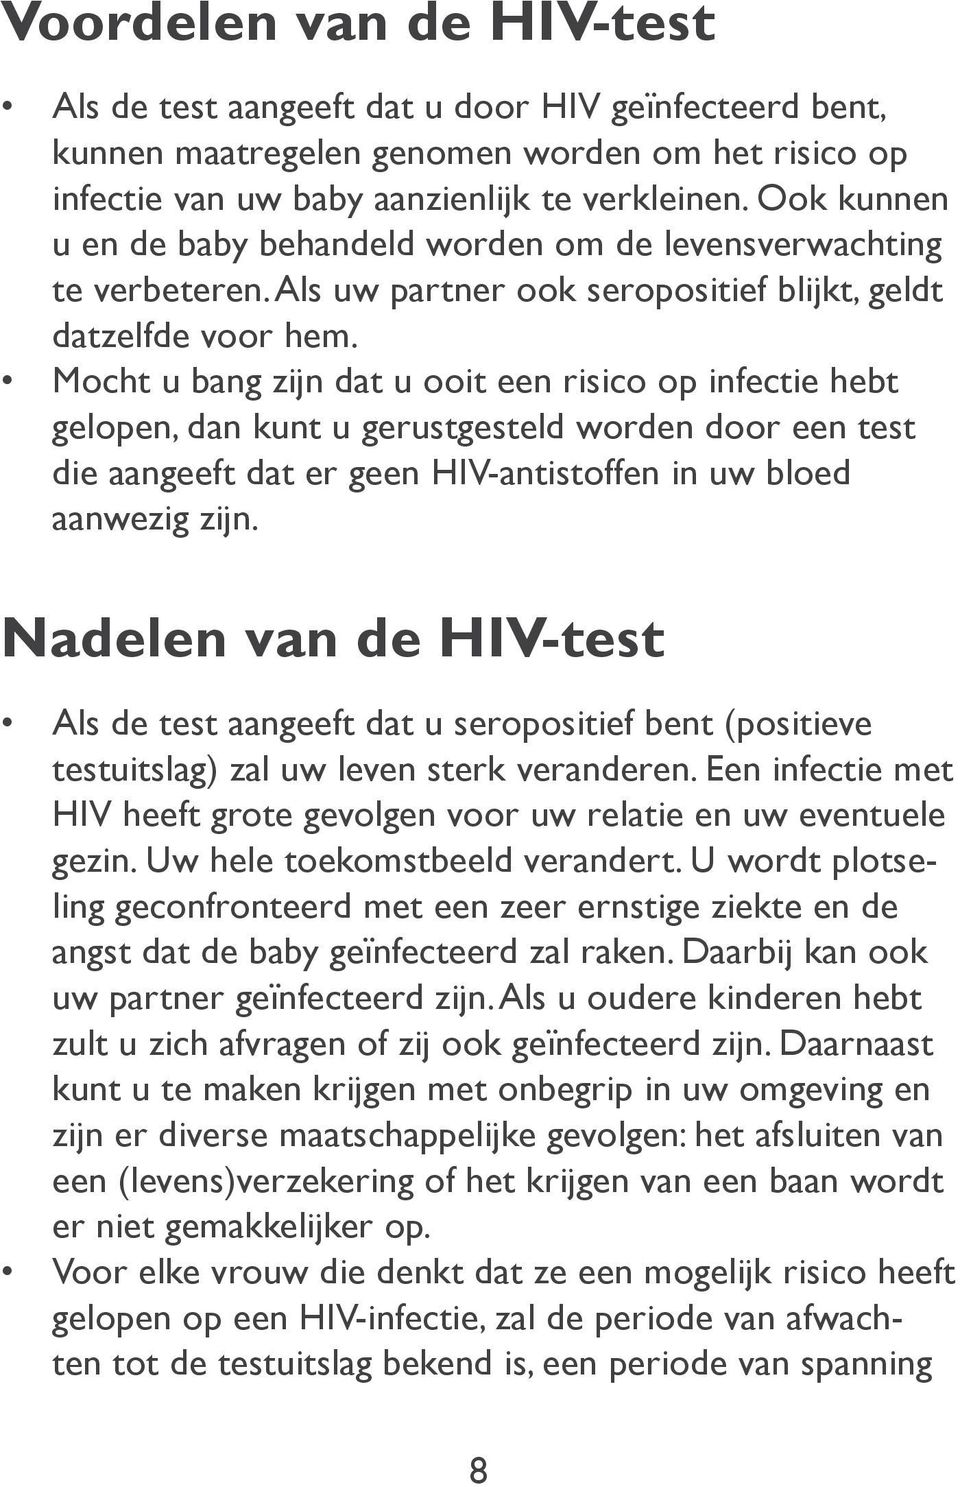 Mocht u bang zijn dat u ooit een risico op infectie hebt gelopen, dan kunt u gerustgesteld worden door een test die aangeeft dat er geen HIV-antistoffen in uw bloed aanwezig zijn.